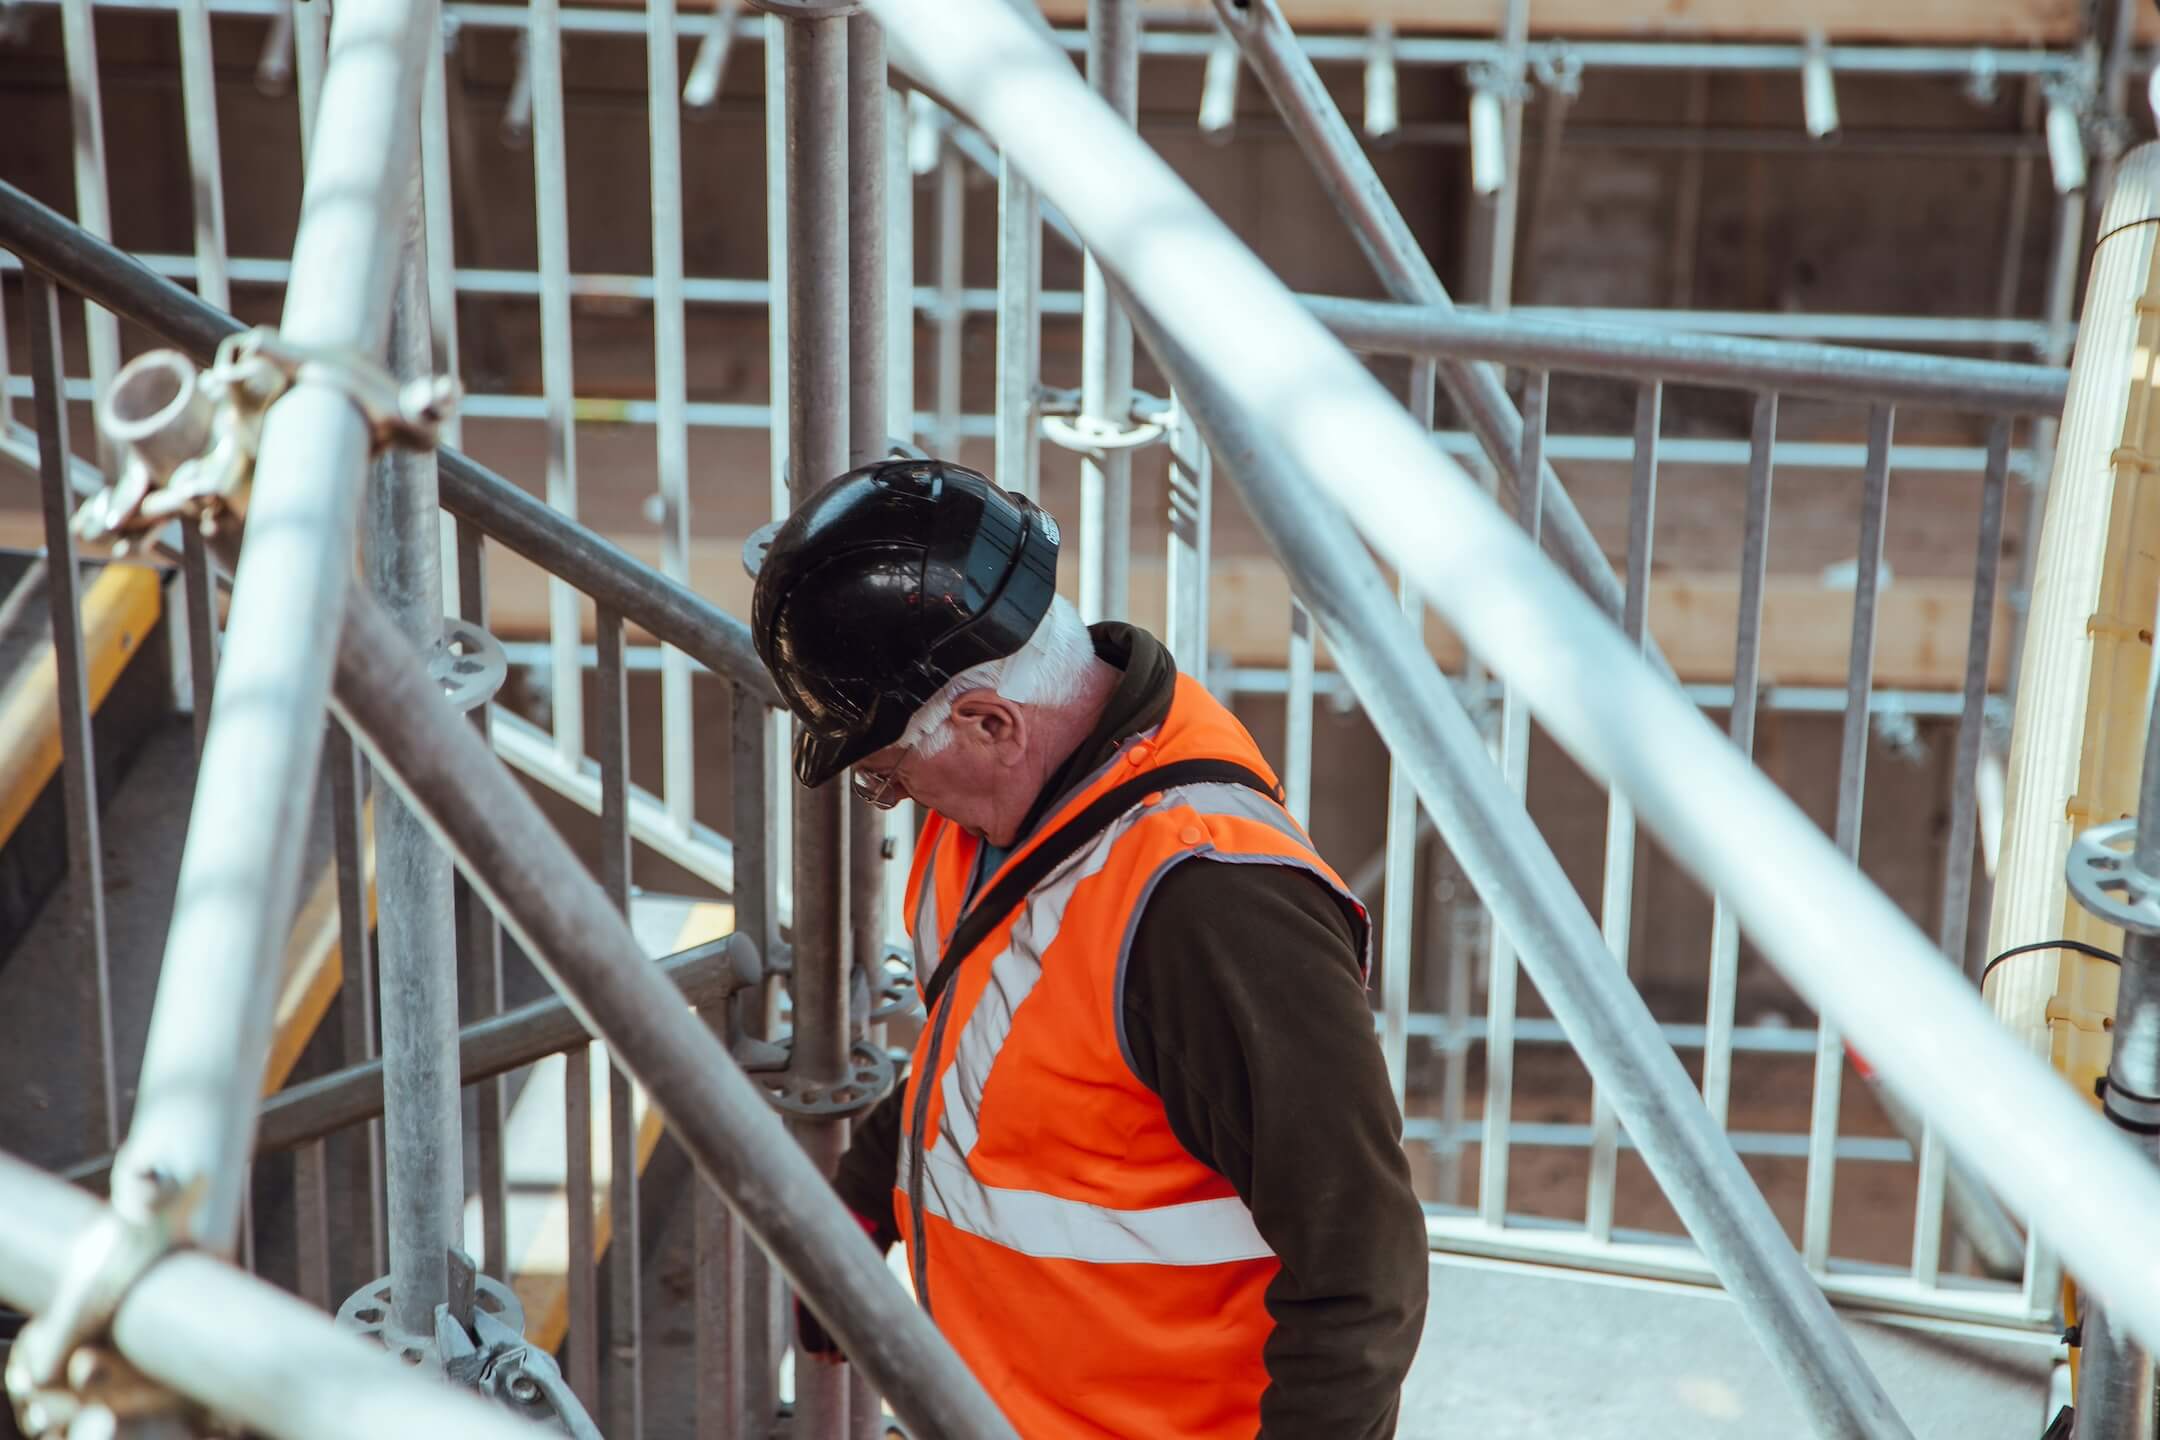 Arbeiter in Sicherheitsausrüstung überprüft Gerüstbau auf einer Baustelle, repräsentiert die Fachkompetenz, die Flexa Personal vermittelt.